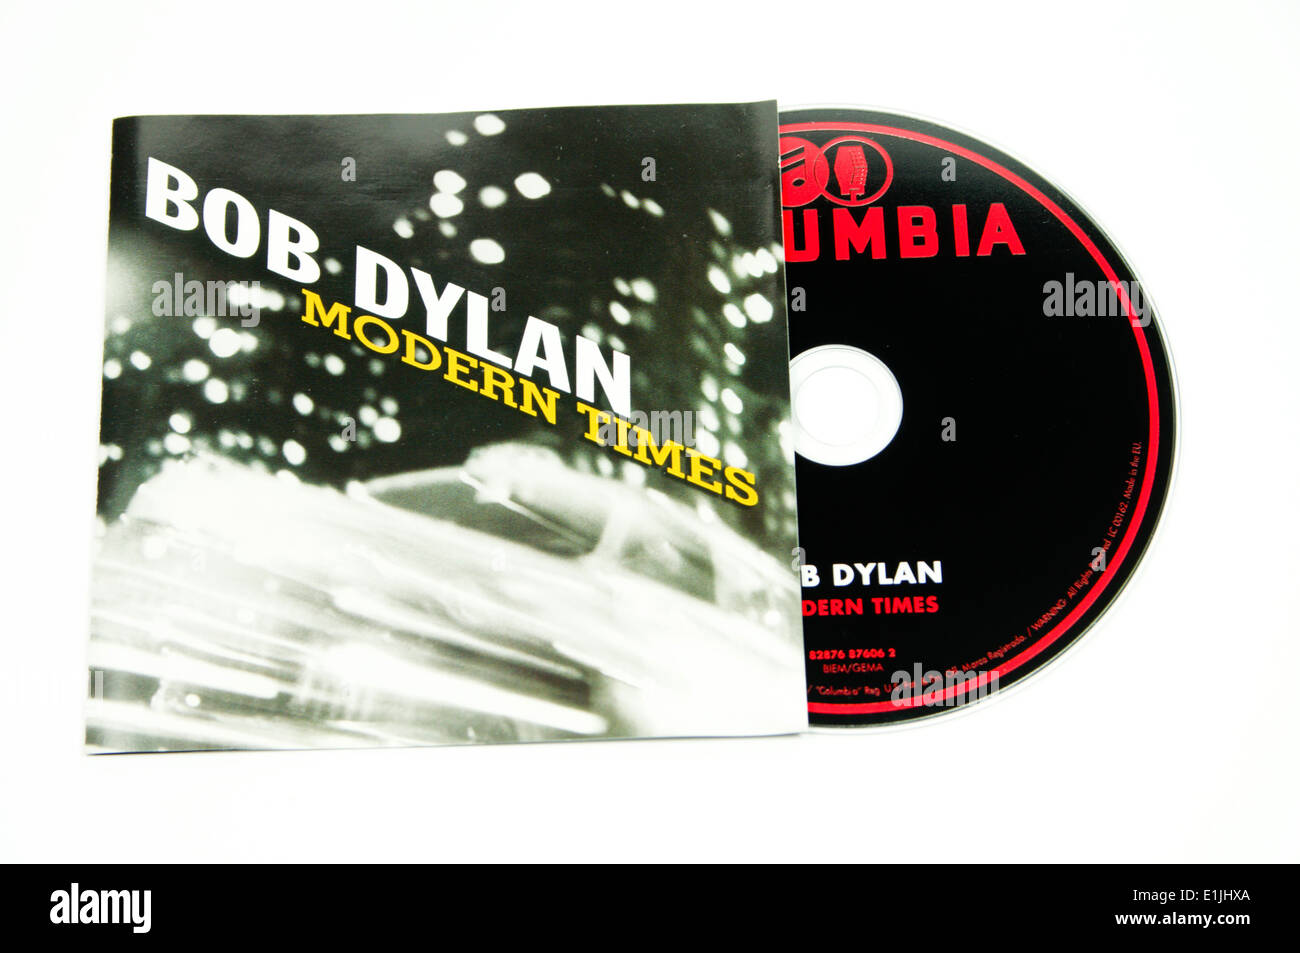 Bob Dylan 'Modern Times'album. Stock Photo